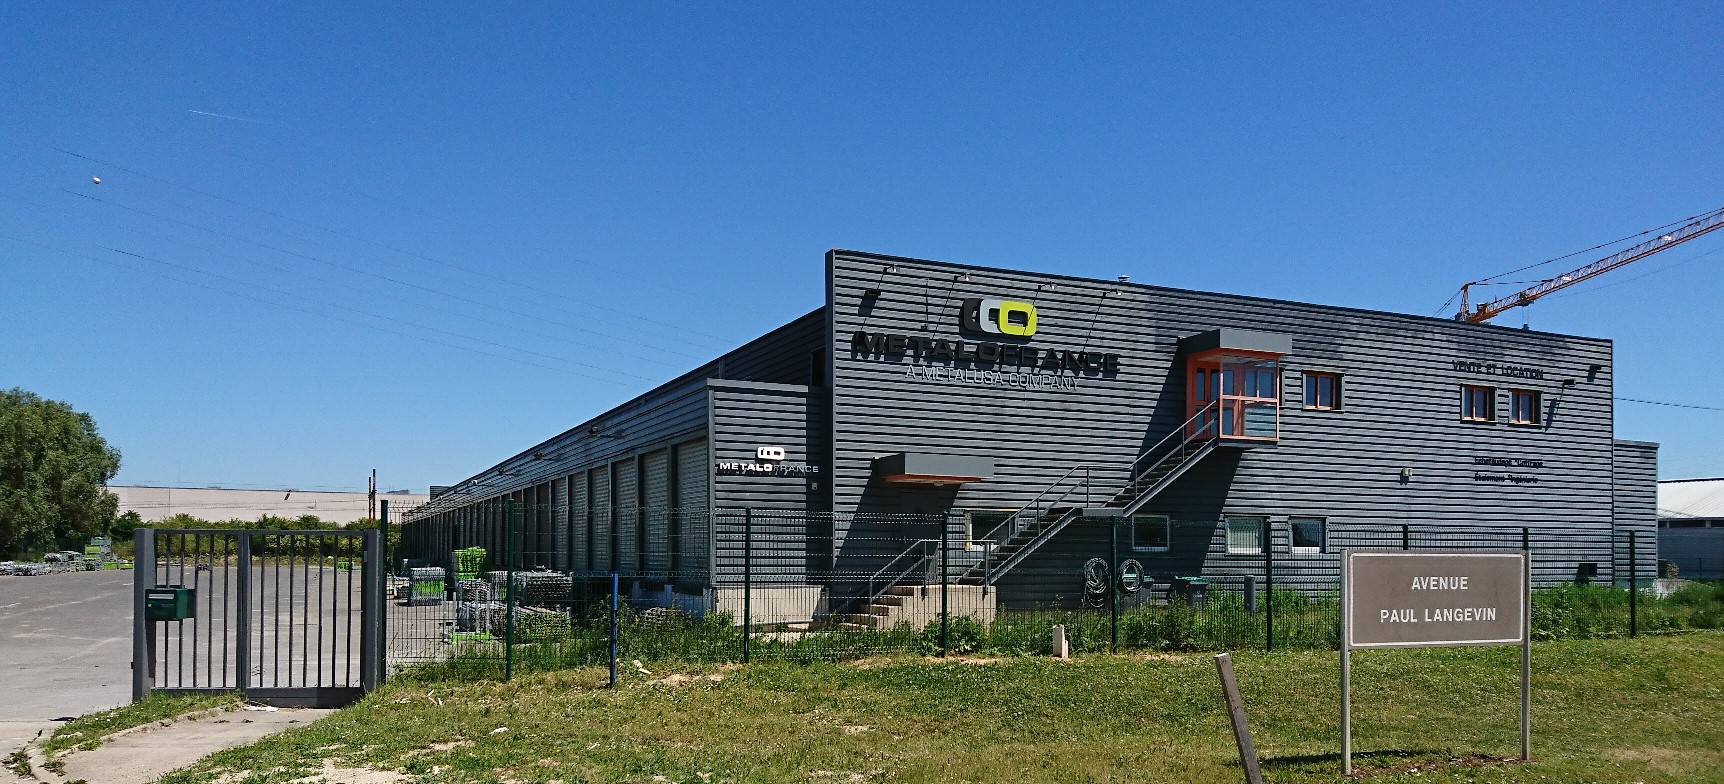 METALOFRANCE, société filiale de Metalusa a investi 1 million et demi d’euros dans ces nouveaux locaux de Moissy-Cramayel en région Île-de-France